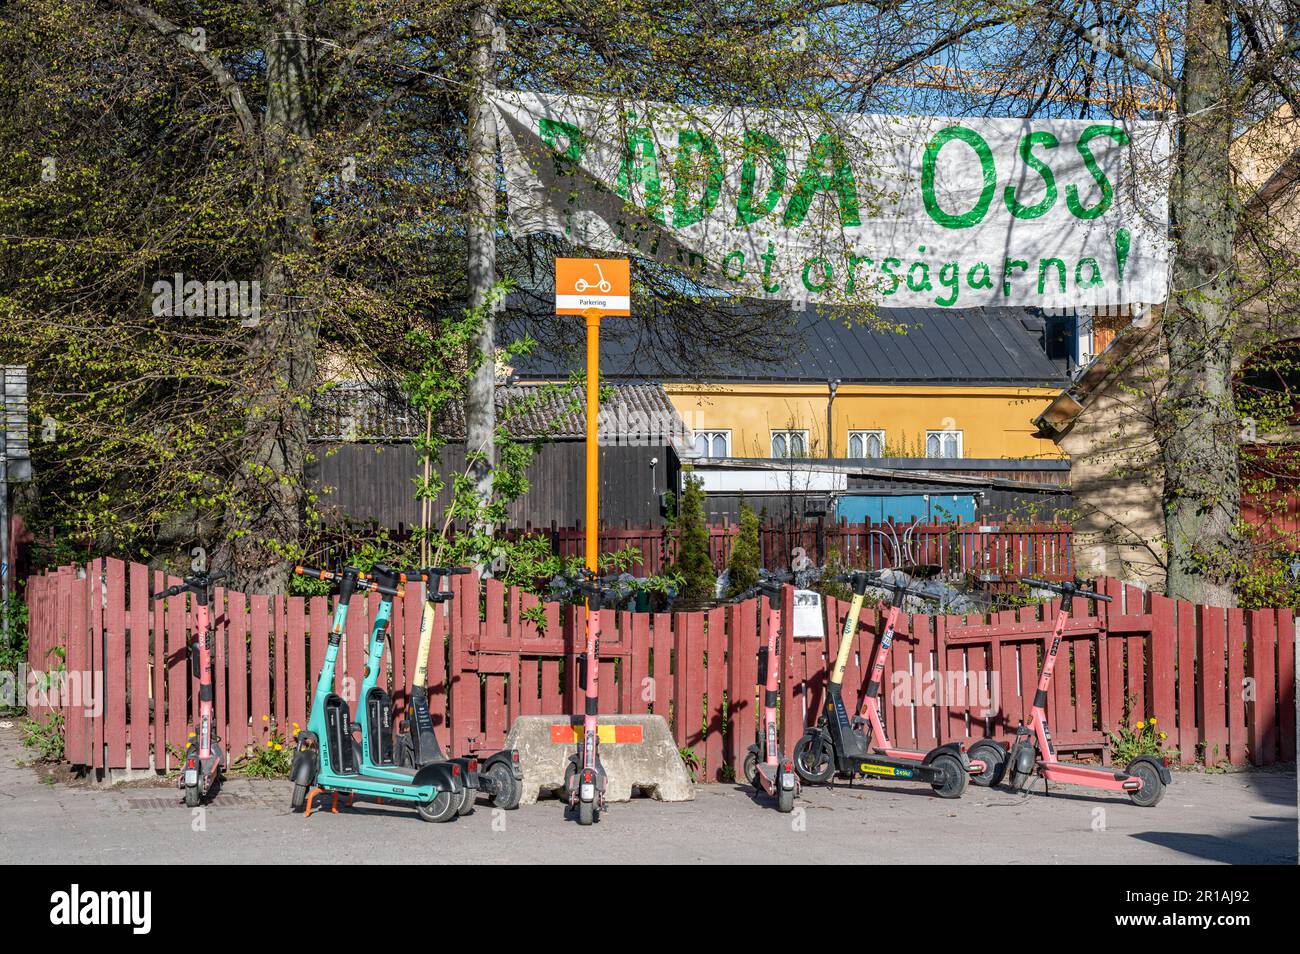 Activistas ambientalistas protestan contra un proyecto de construcción en Norrköping, Suecia, con una pancarta en la Plaza Gossip que dice salvar los árboles. Foto de stock